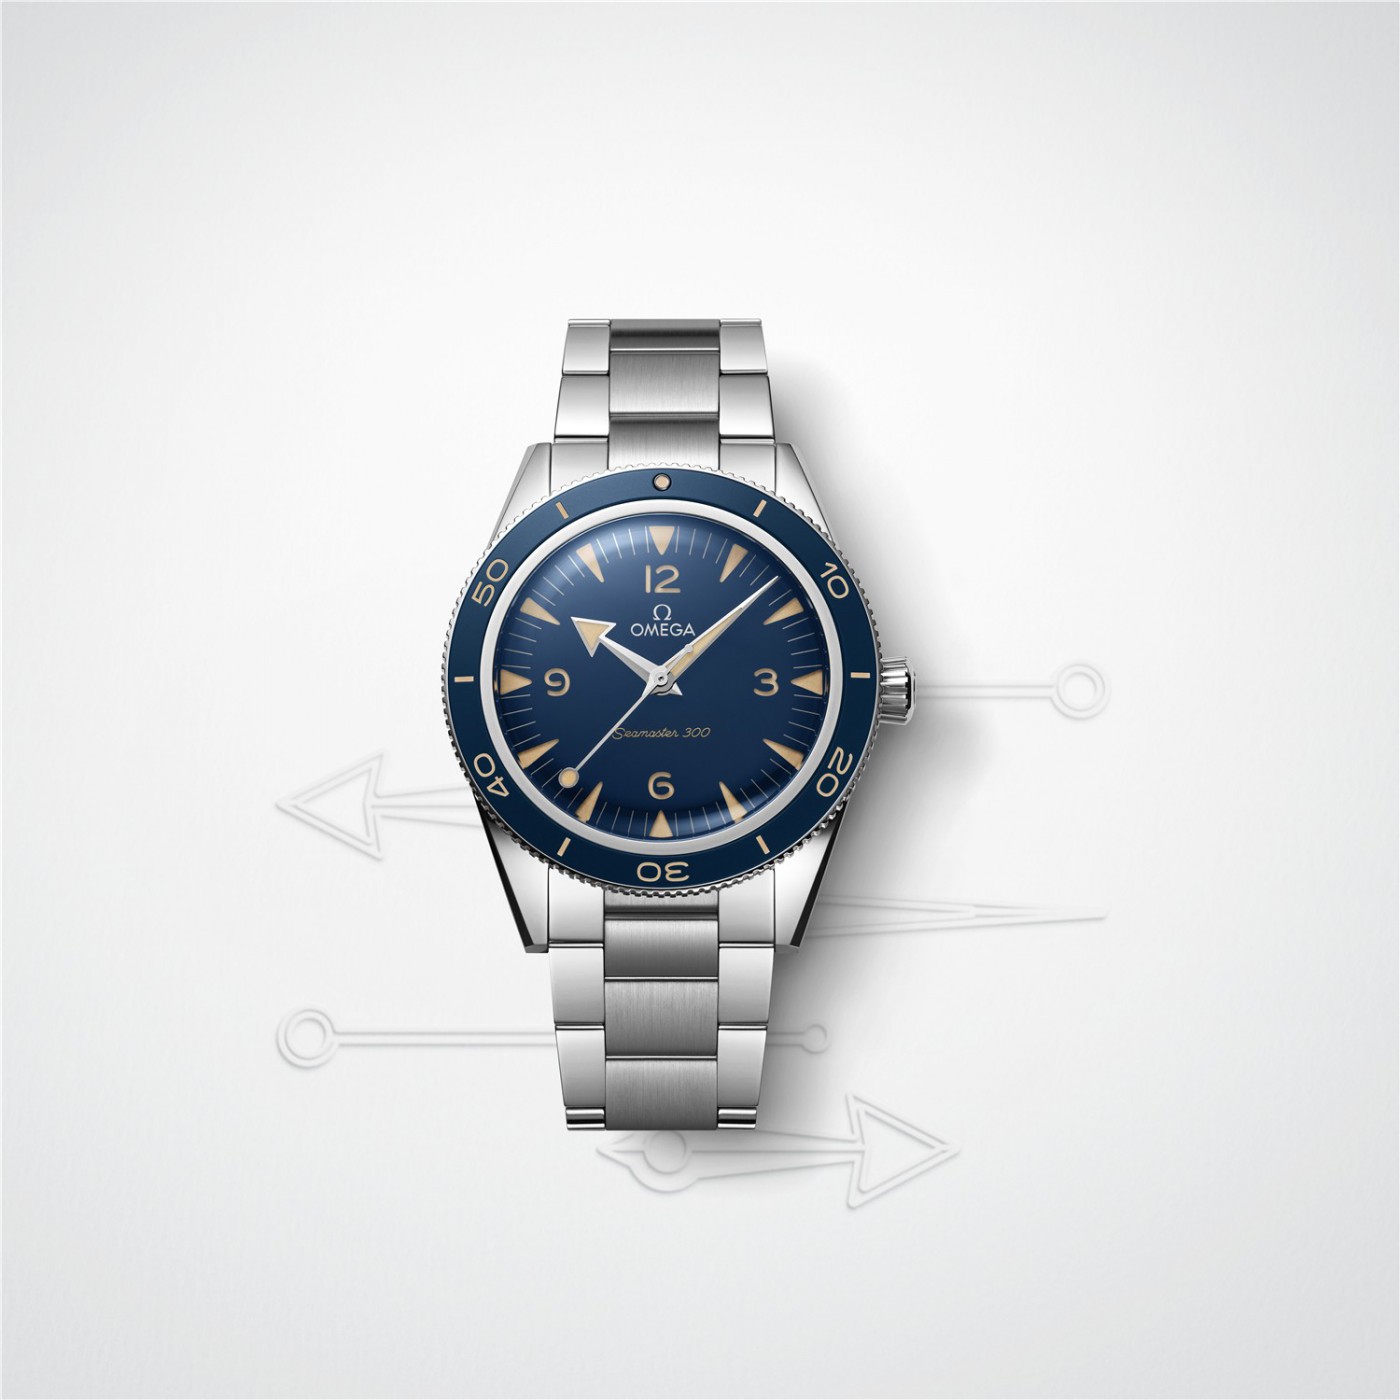 欧米茄海马300腕表精钢款搭配蓝色表盘_情境图_副本.jpg